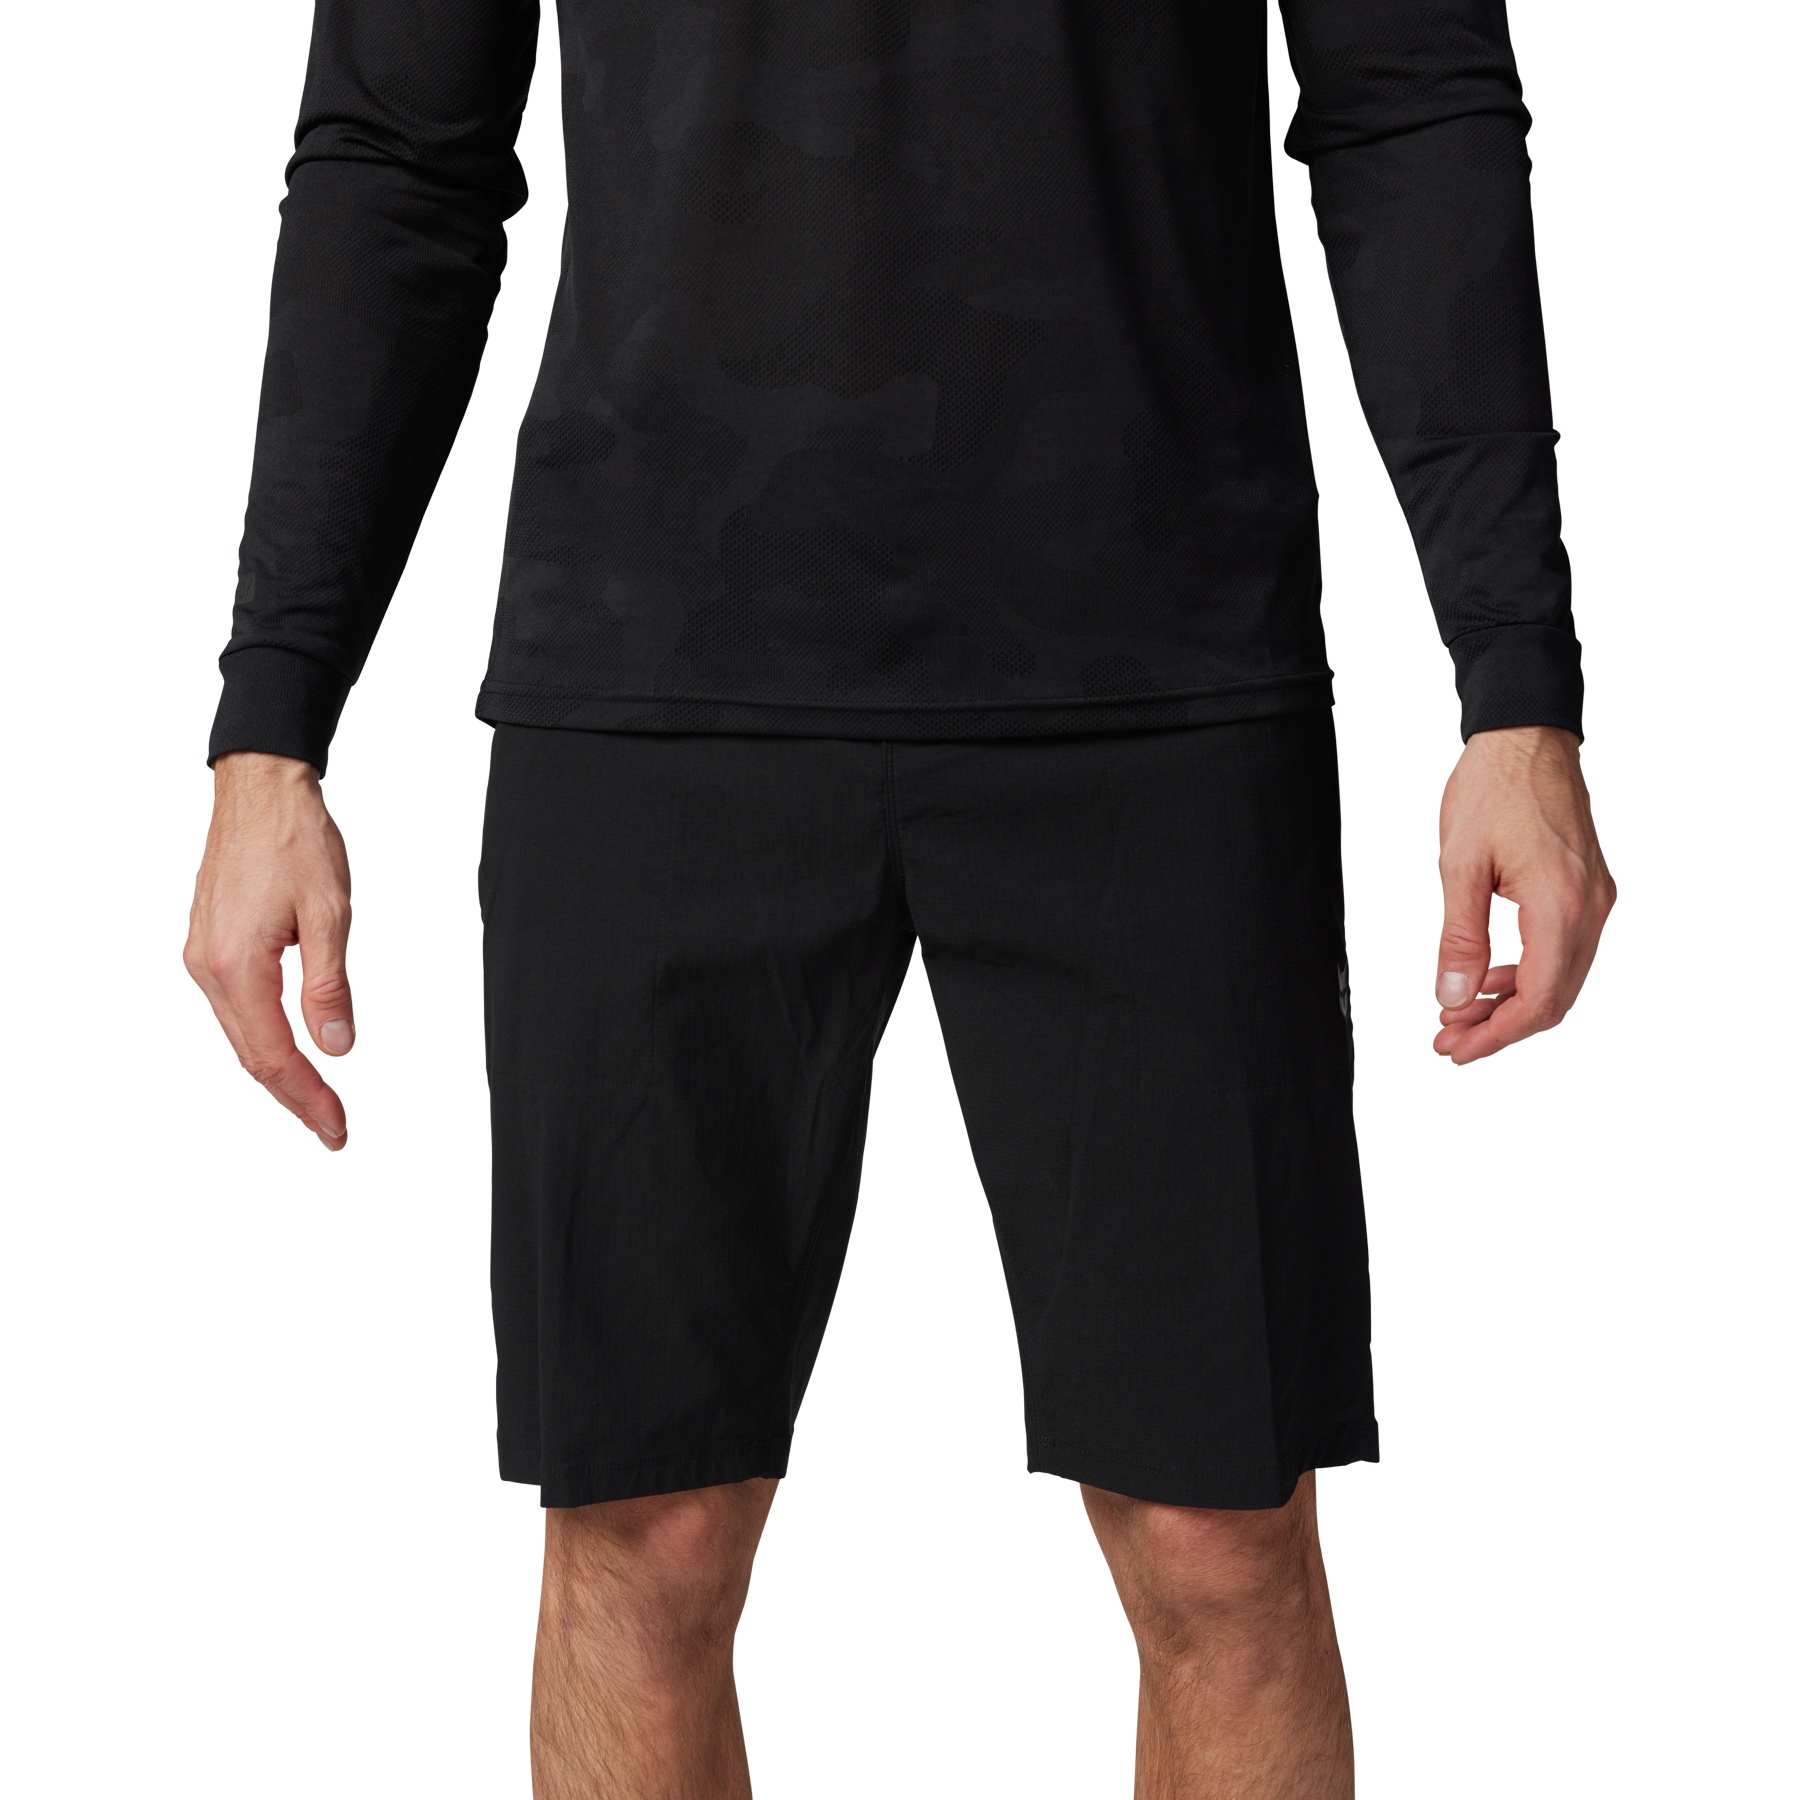 Produktbild von FOX Ranger MTB Shorts mit Innenhose Herren - black